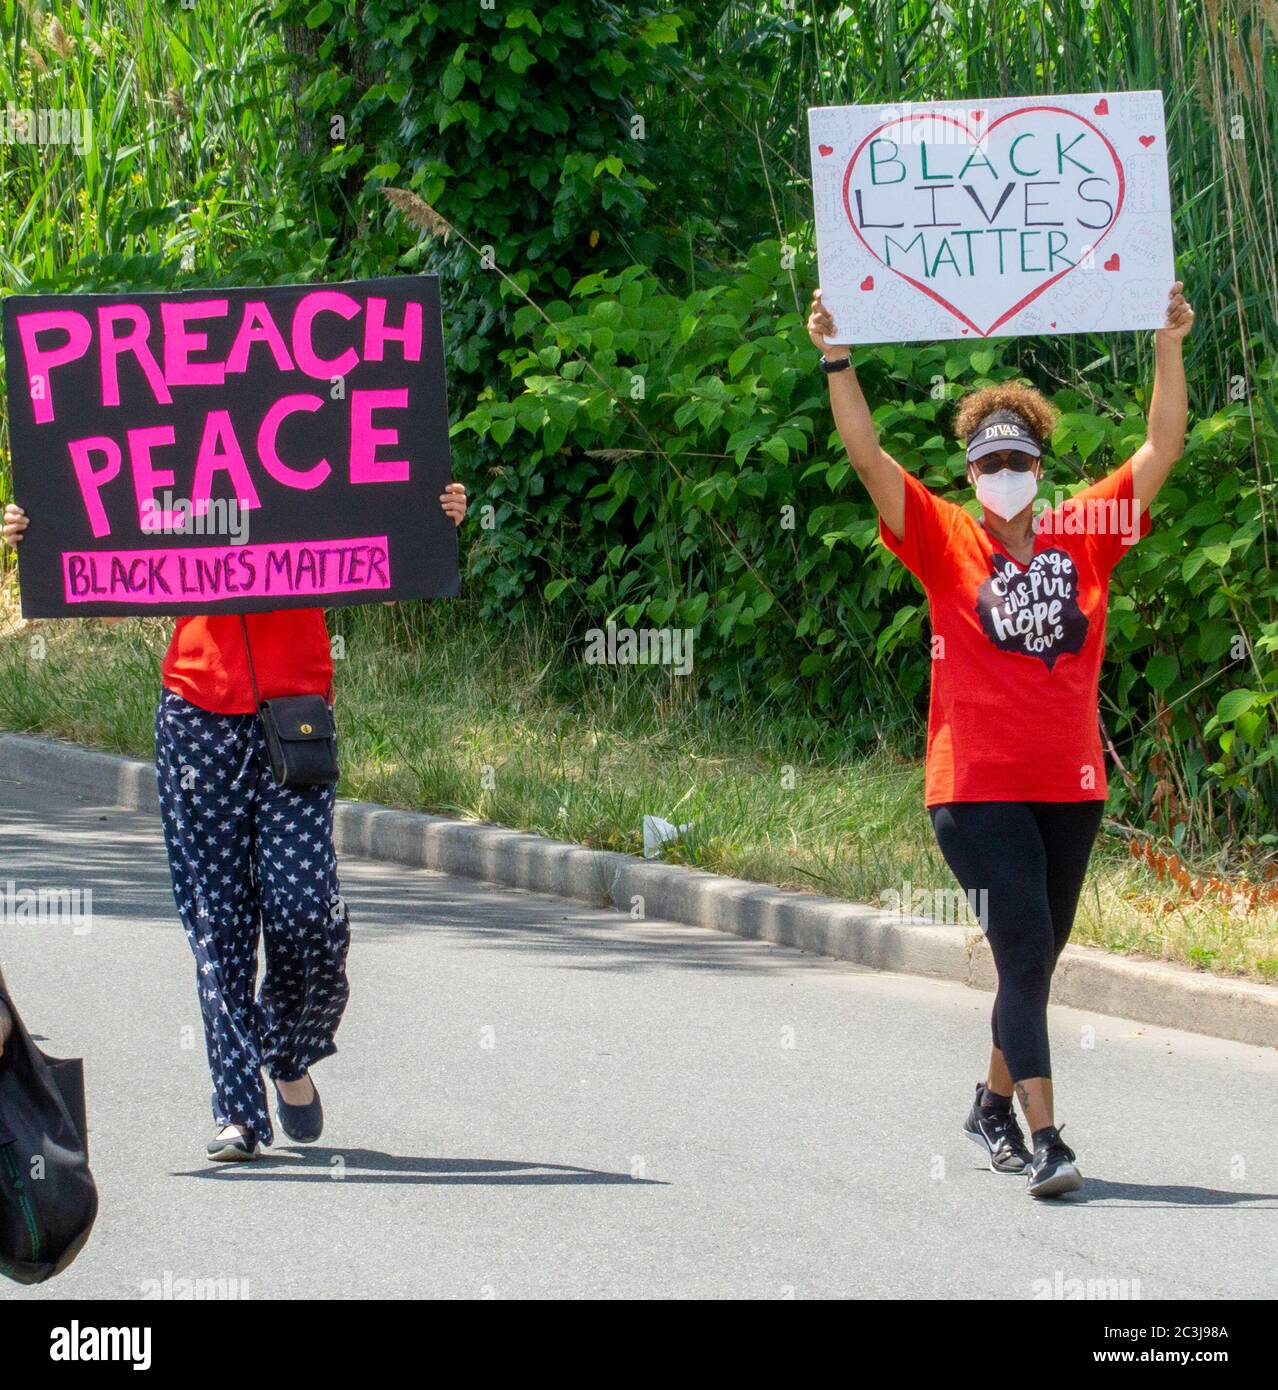 Le dix-septième mars, des vies noires comptent protester George Floyd - deux femmes protestant contre la présence de panneaux DE PAIX portant des chemises orange Banque D'Images